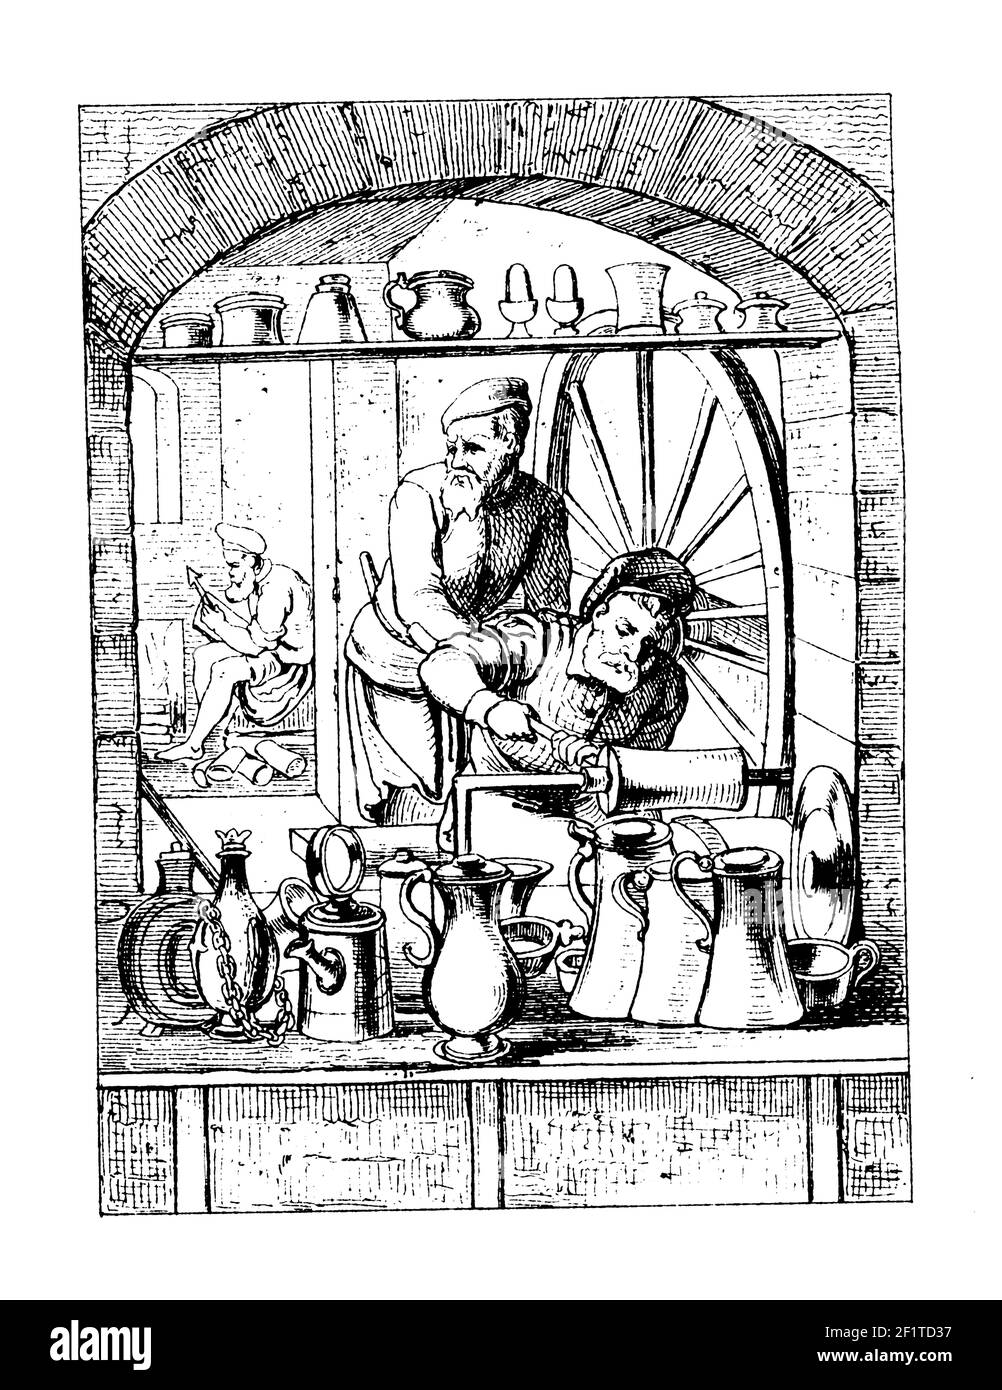 Antique 19th-century engraving of a moulder. Published in Bilder-Atlas zur Weltgeschichte nach Kunstwerken alter und neuer Zeit (Stuttgart, Verlag Pau Stock Photo